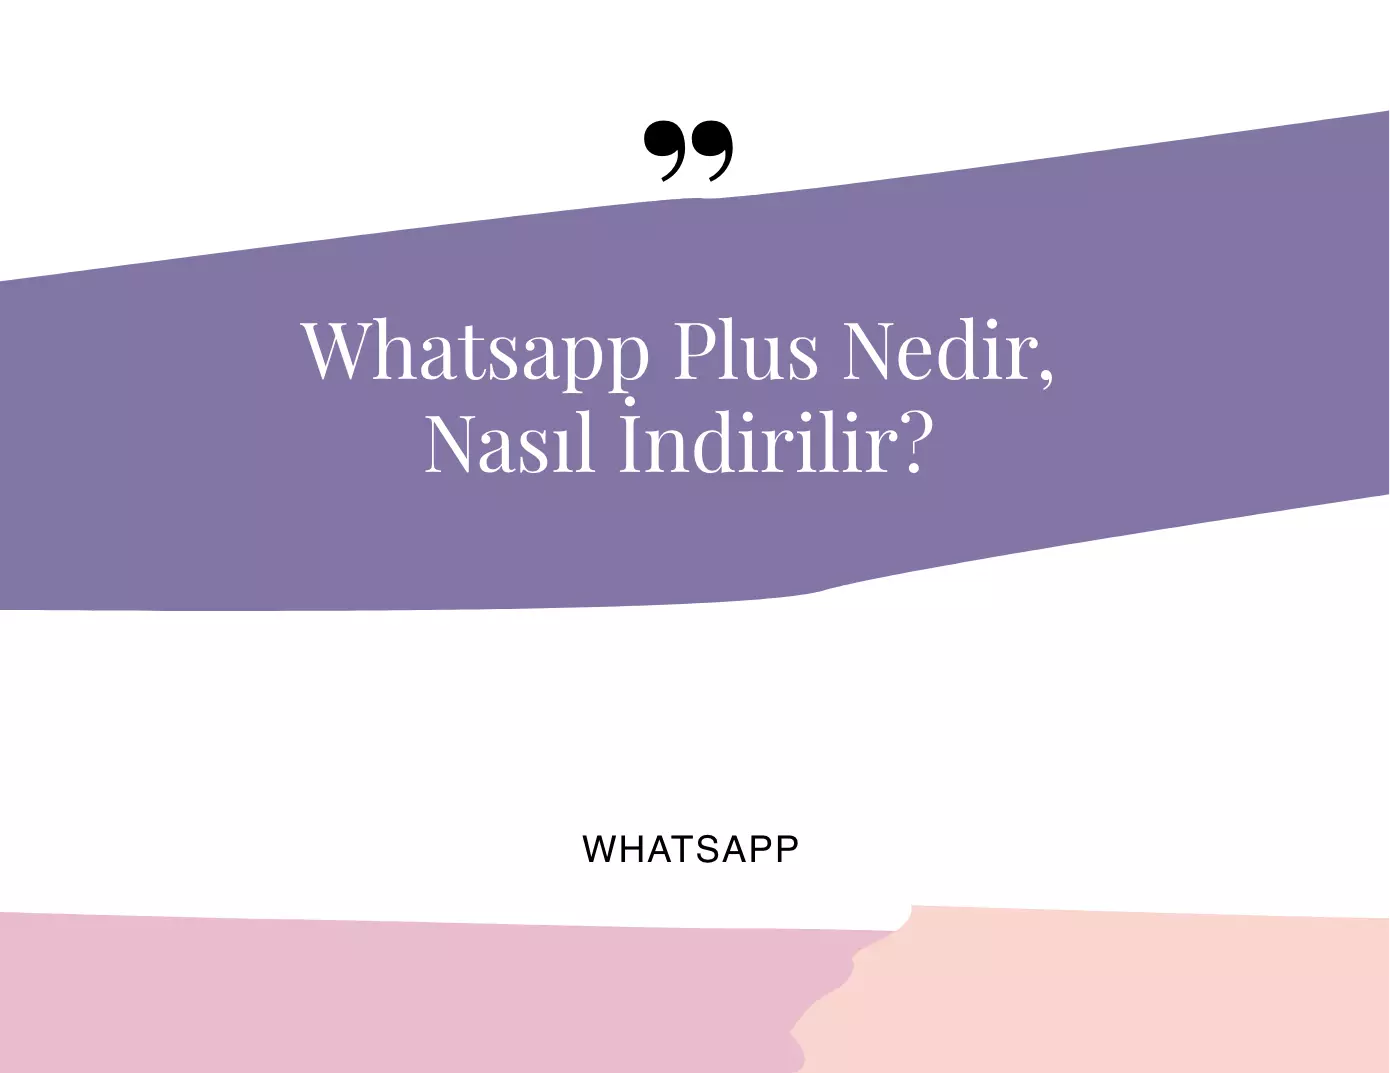 Whatsapp Plus Nedir, Nasıl İndirilir?